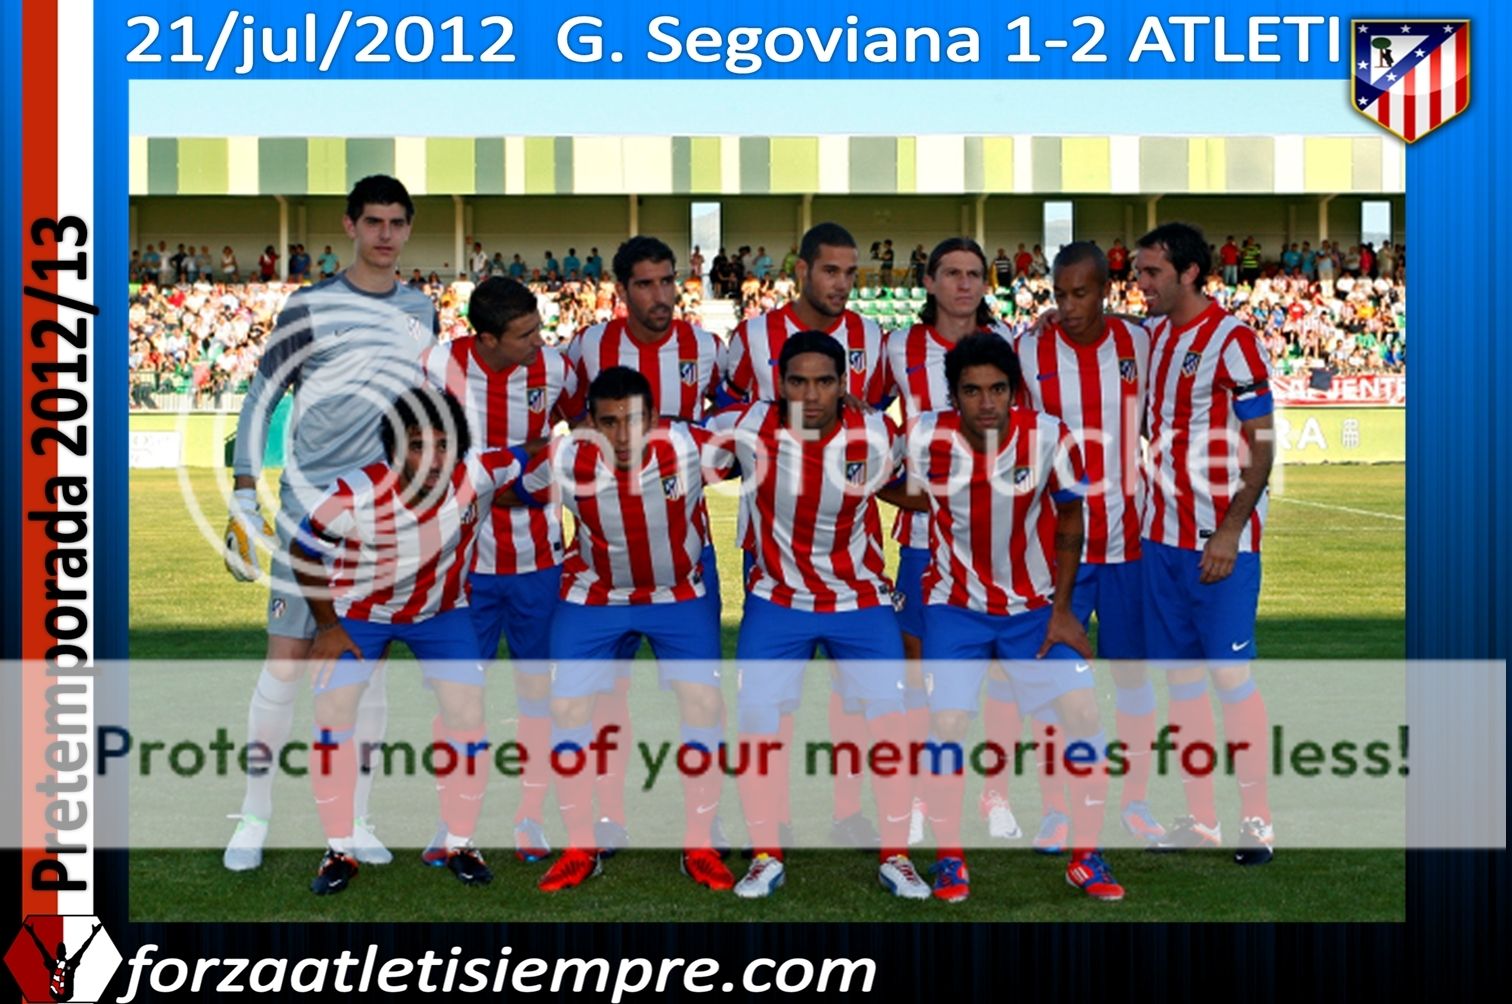 G. Segoviana 1-2 Atlético - El Atlético decepcionó en su estreno en Segovia 002Copiar-1